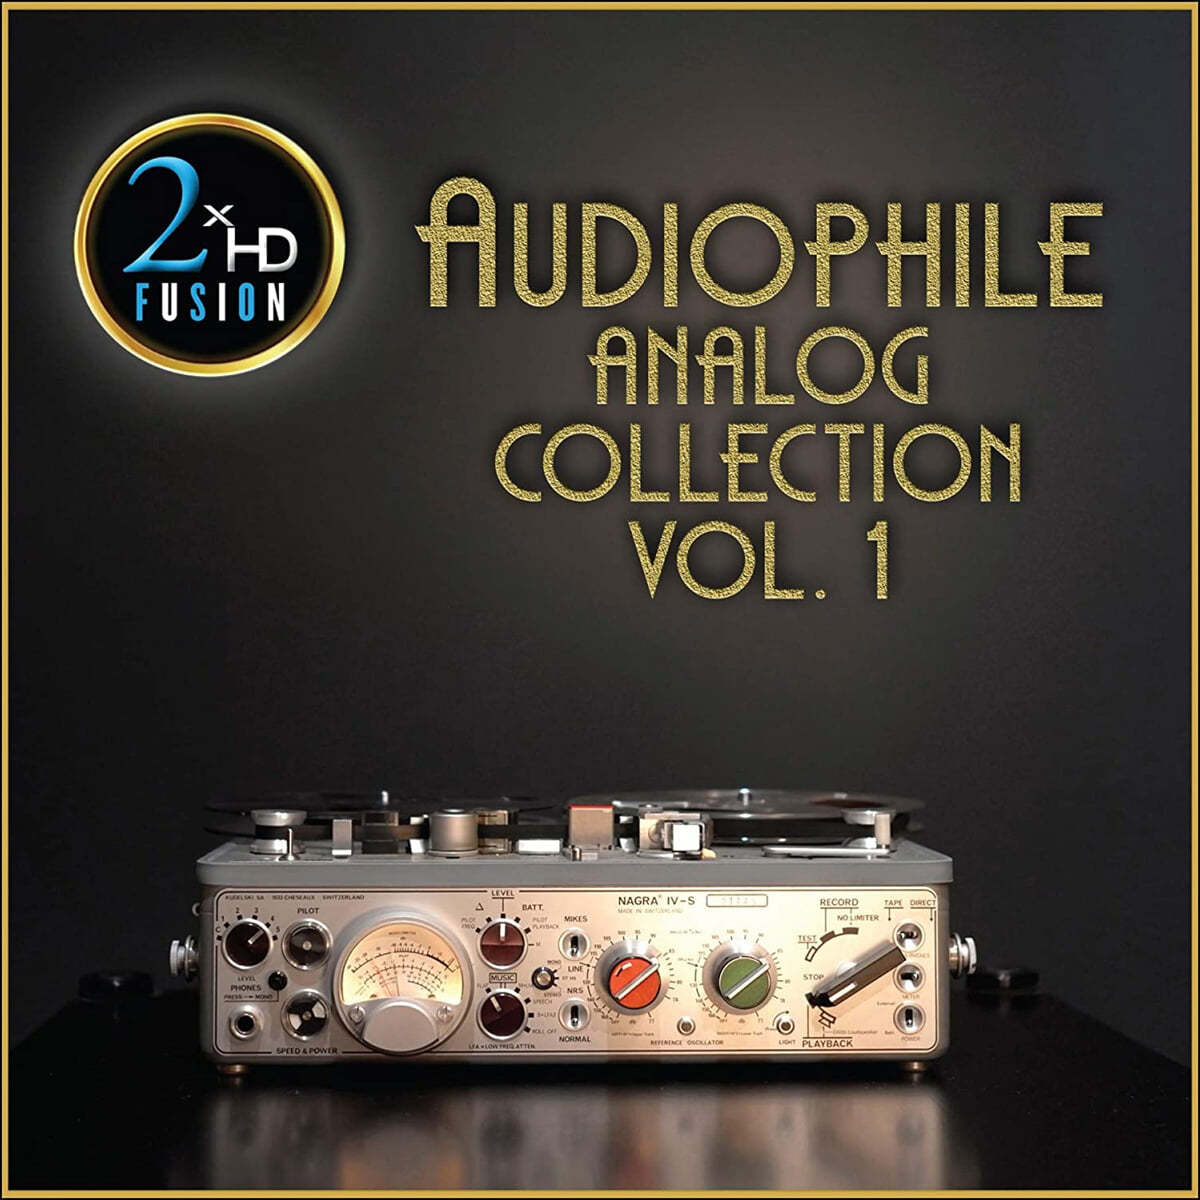 오디오파일 아날로그 컬렉션 1집 (Audiophile Analog Collection Vol. 1) 